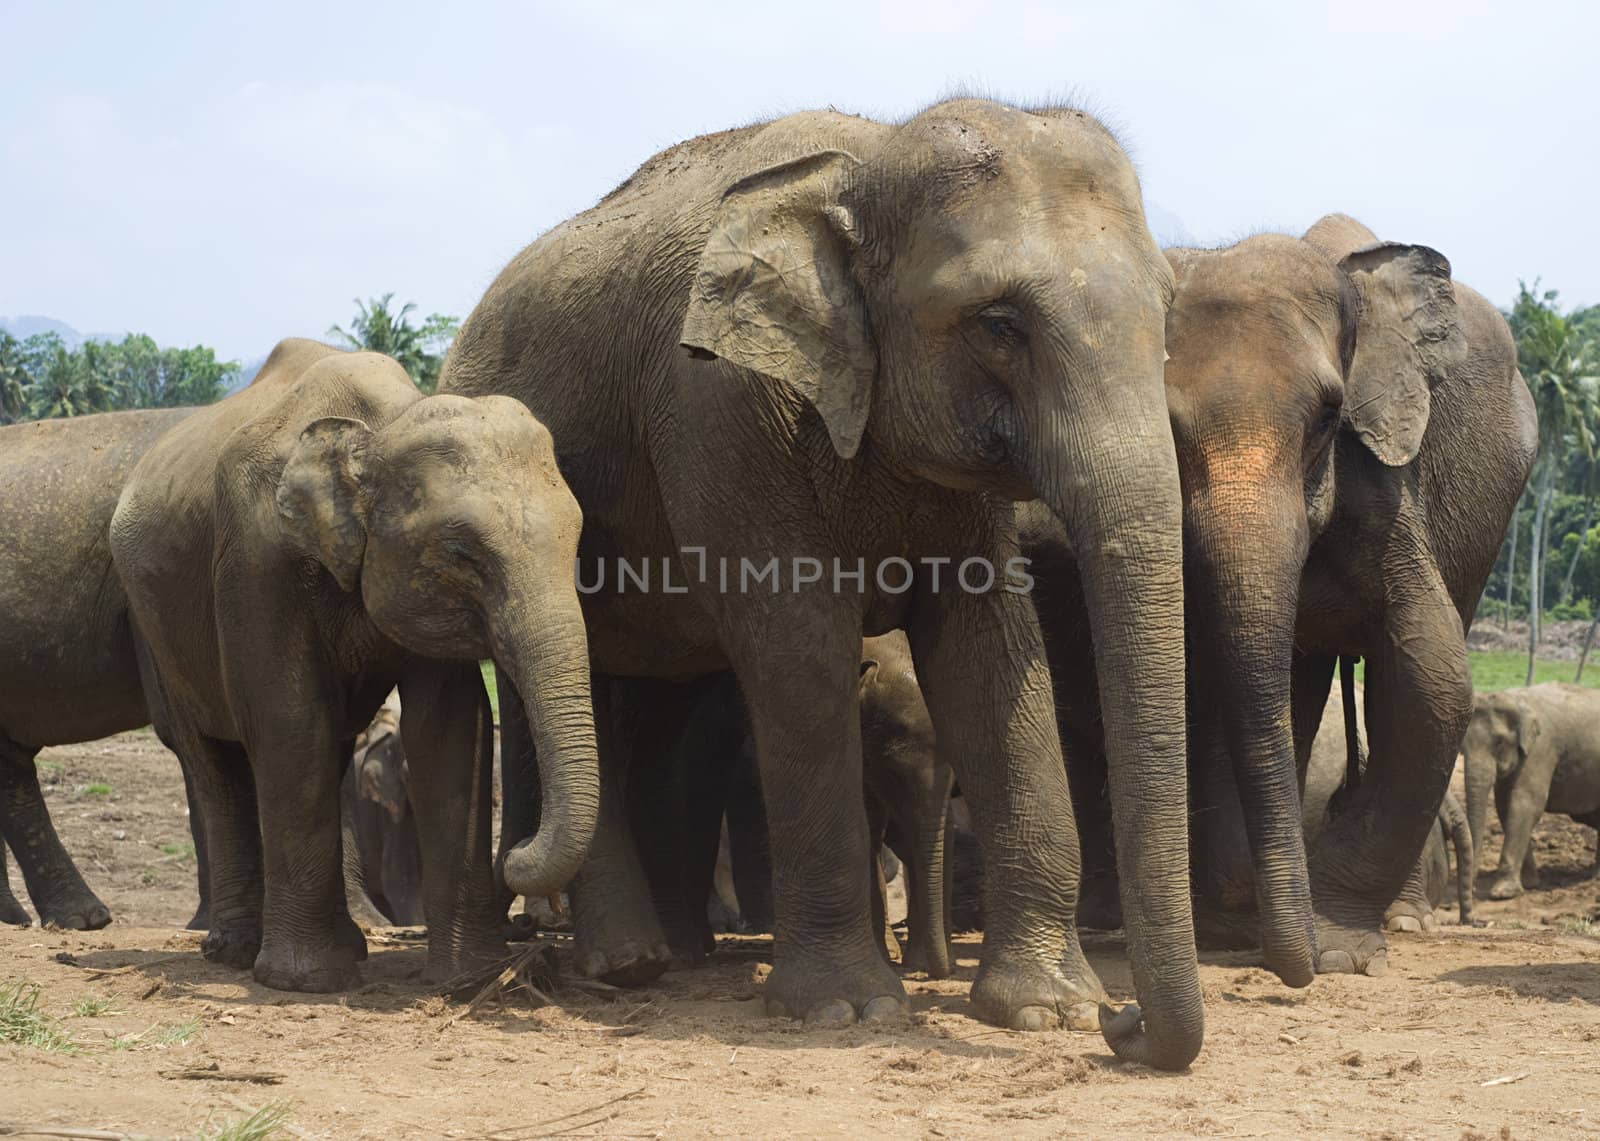 Elephants by joyfull